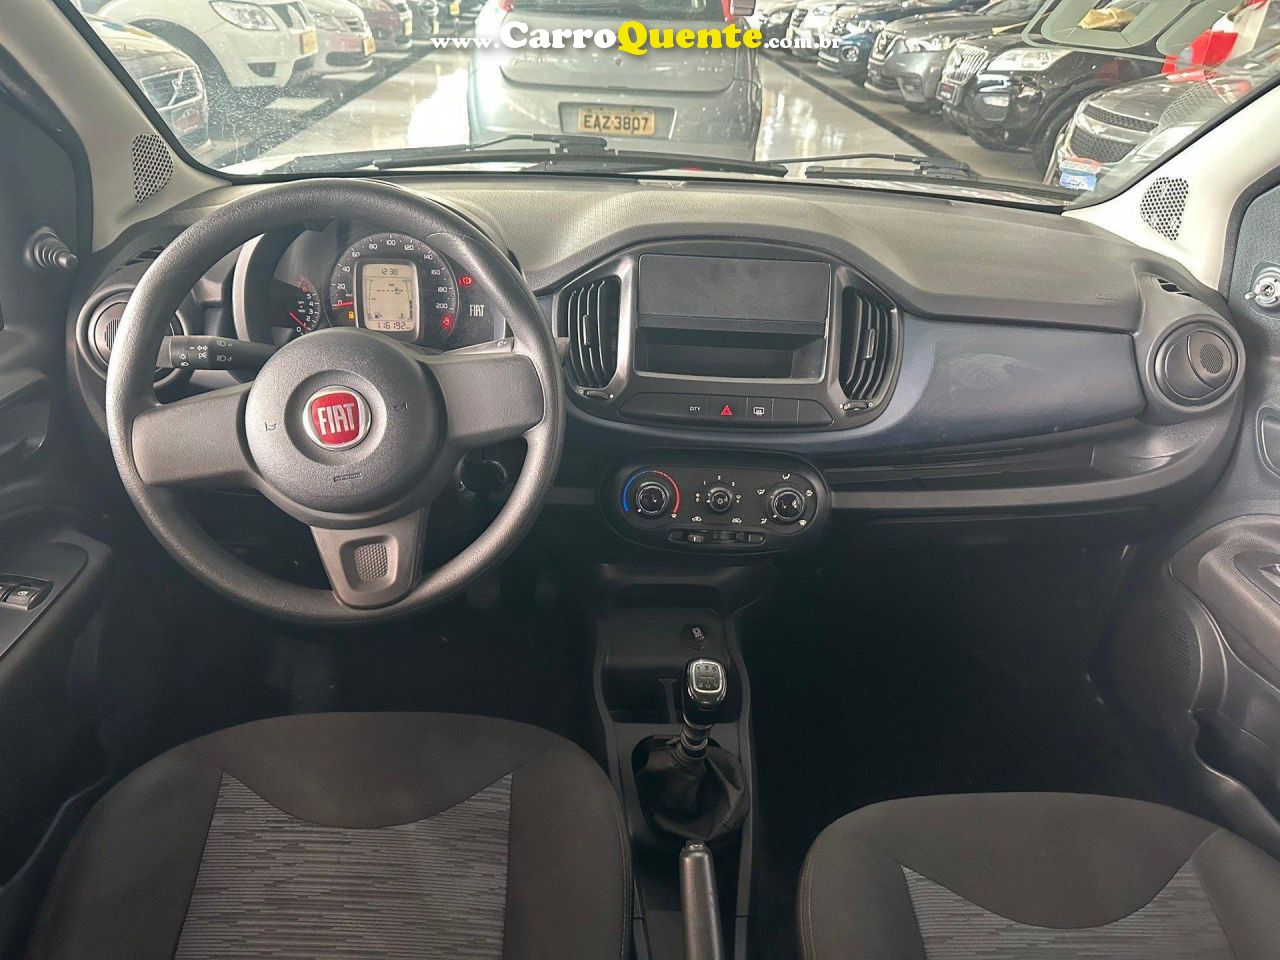 FIAT   UNO DRIVE 1.0 FLEX 6V 5P   PRATA 2018 1.0 FLEX - Loja